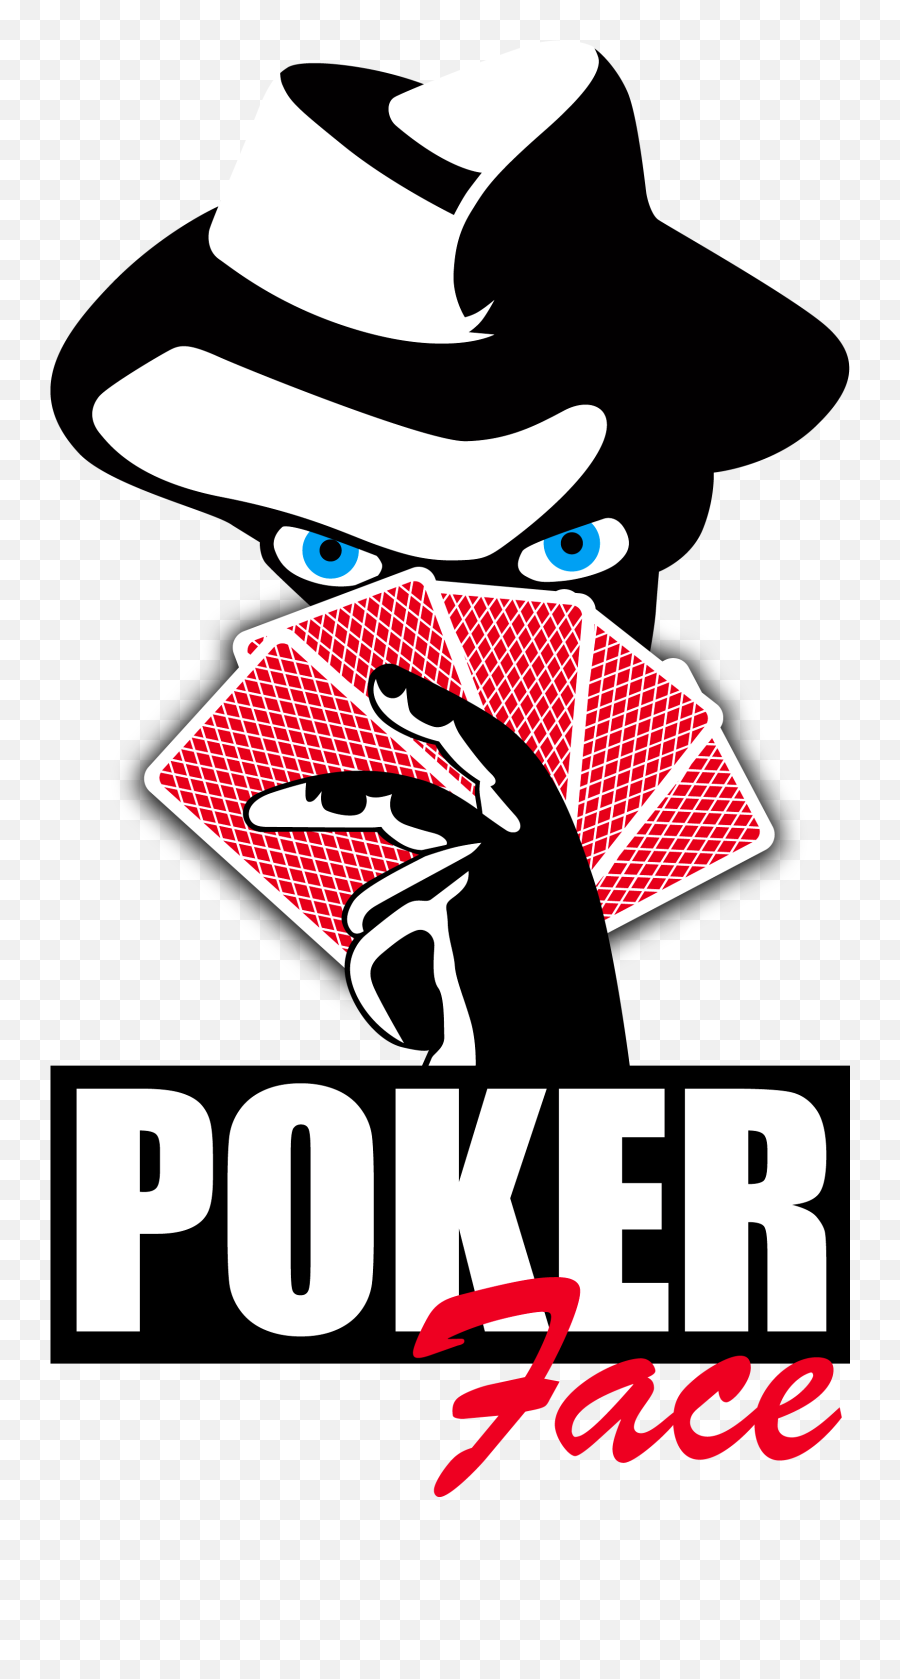 Pokerfacevegas - Poker Face Logo Full Size Png Download Emoji,Face Logo Png